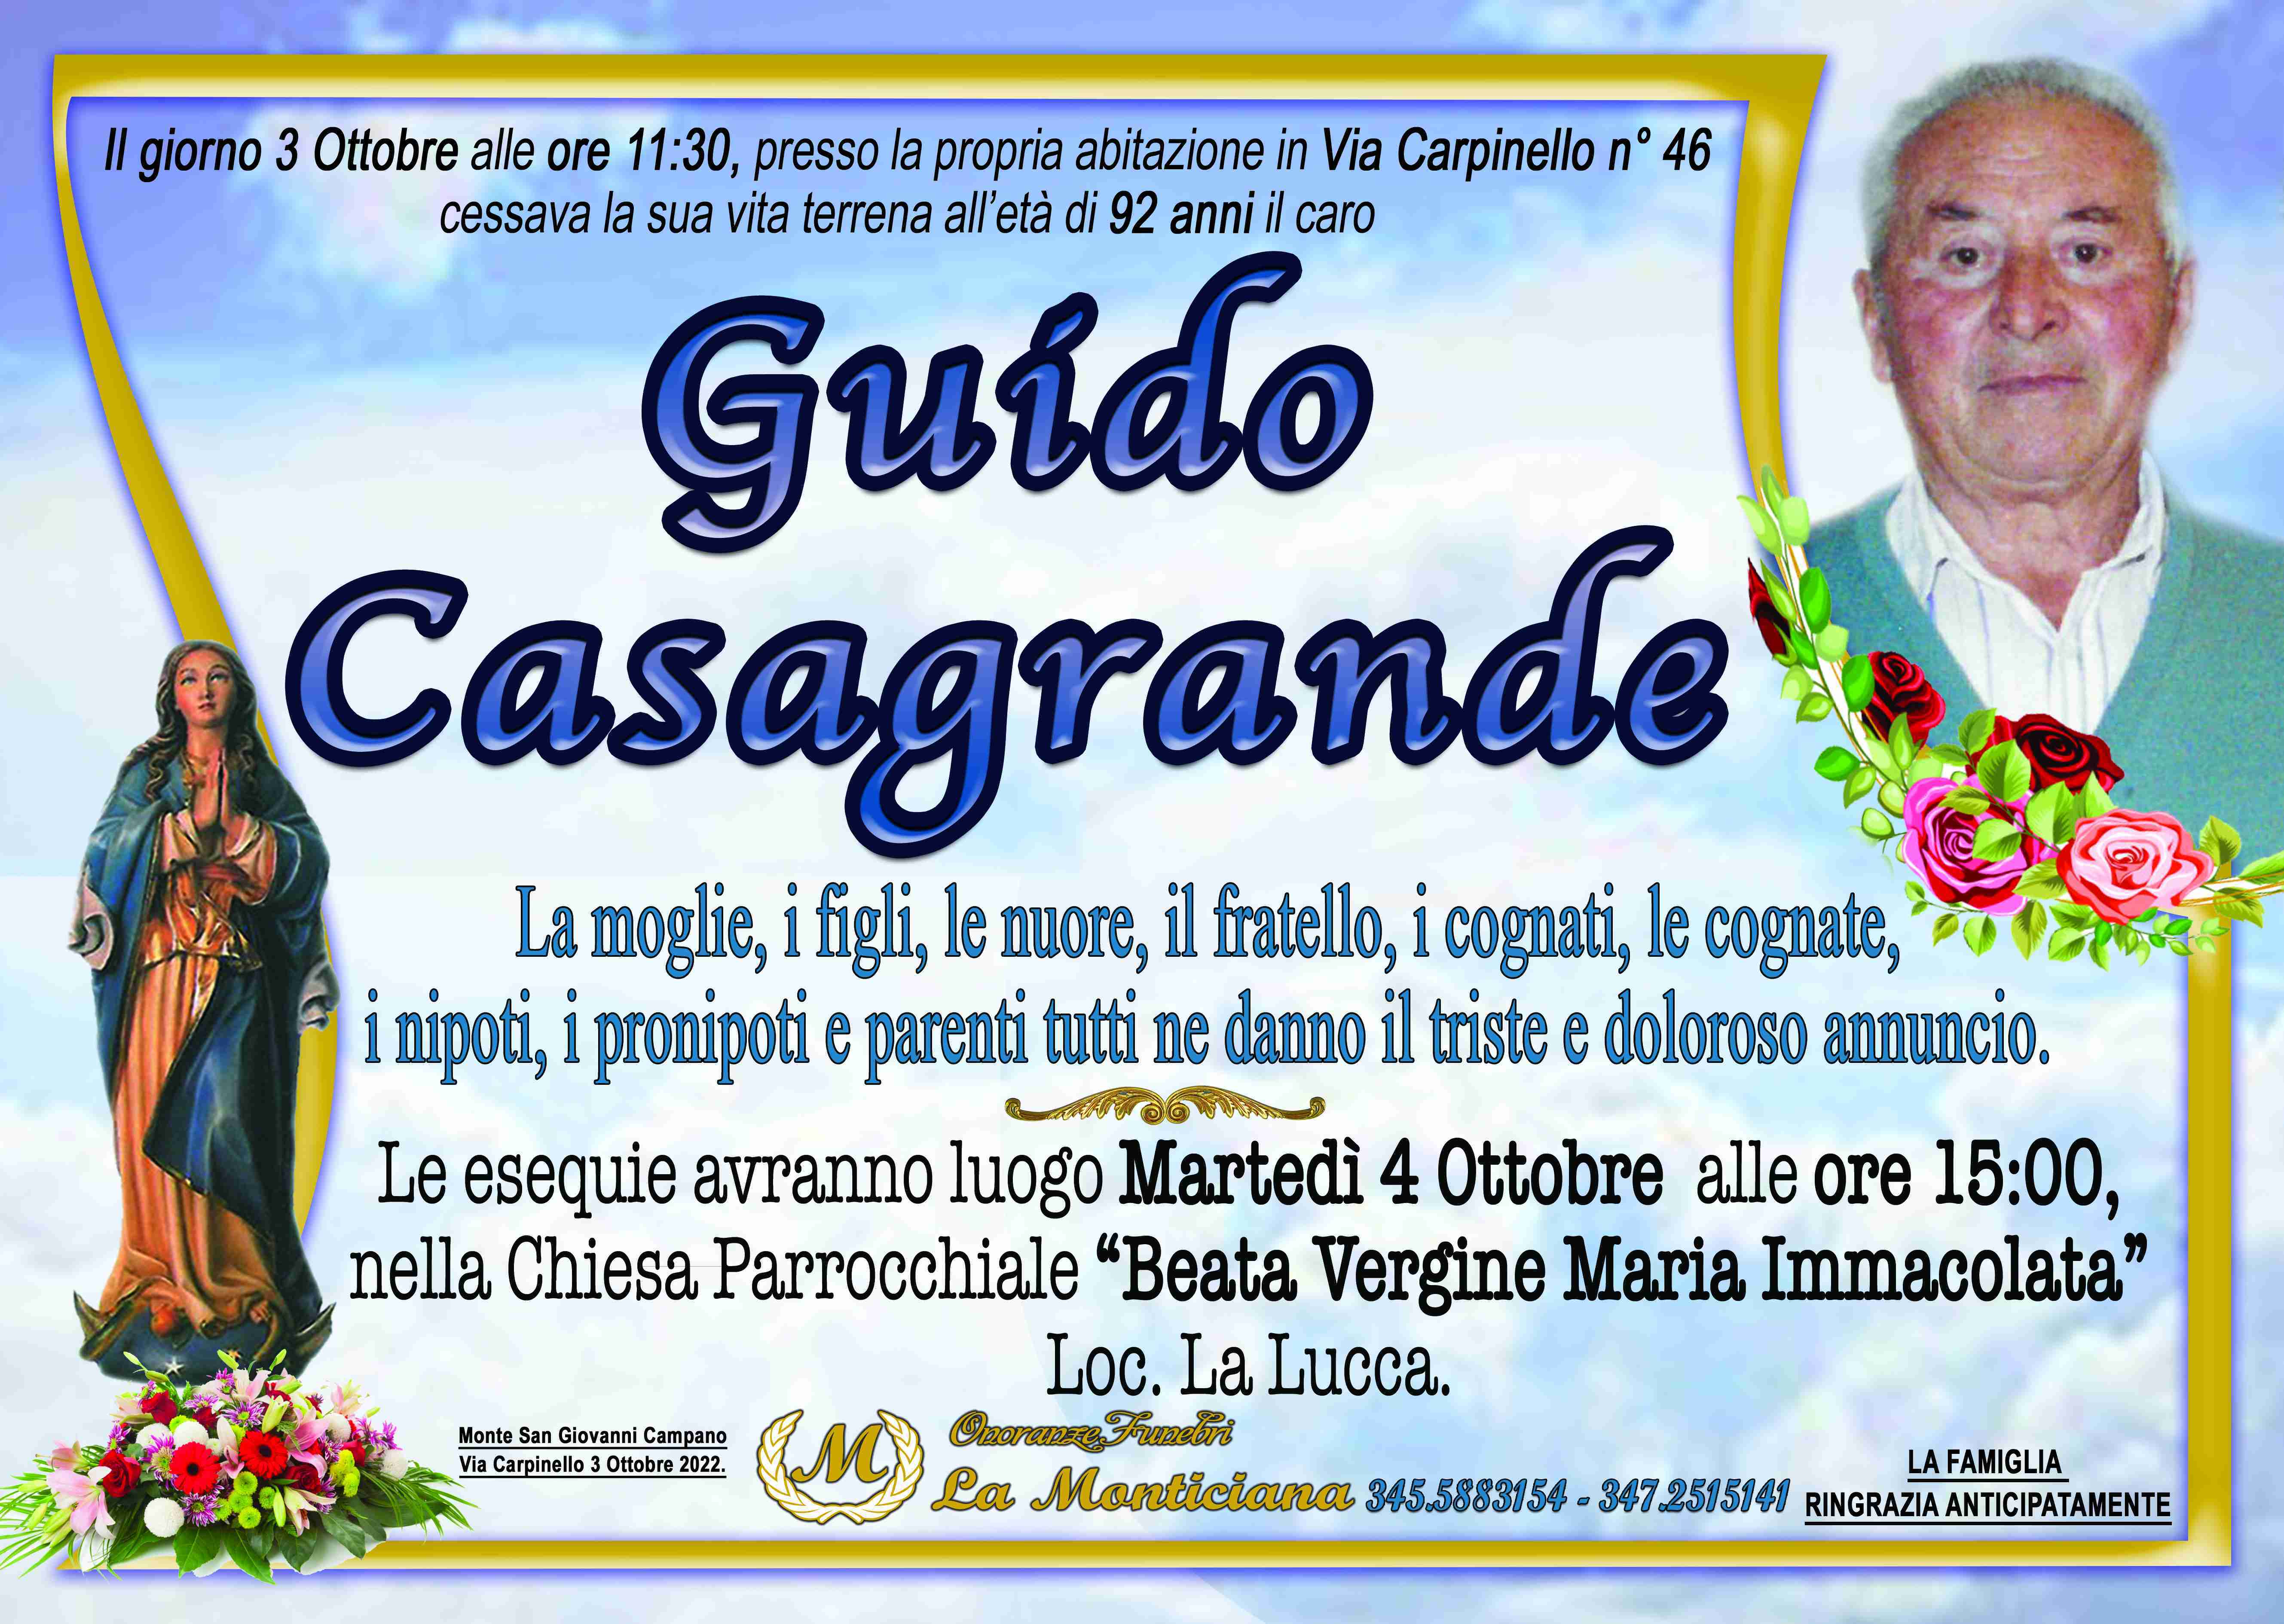 Guido Casagrande